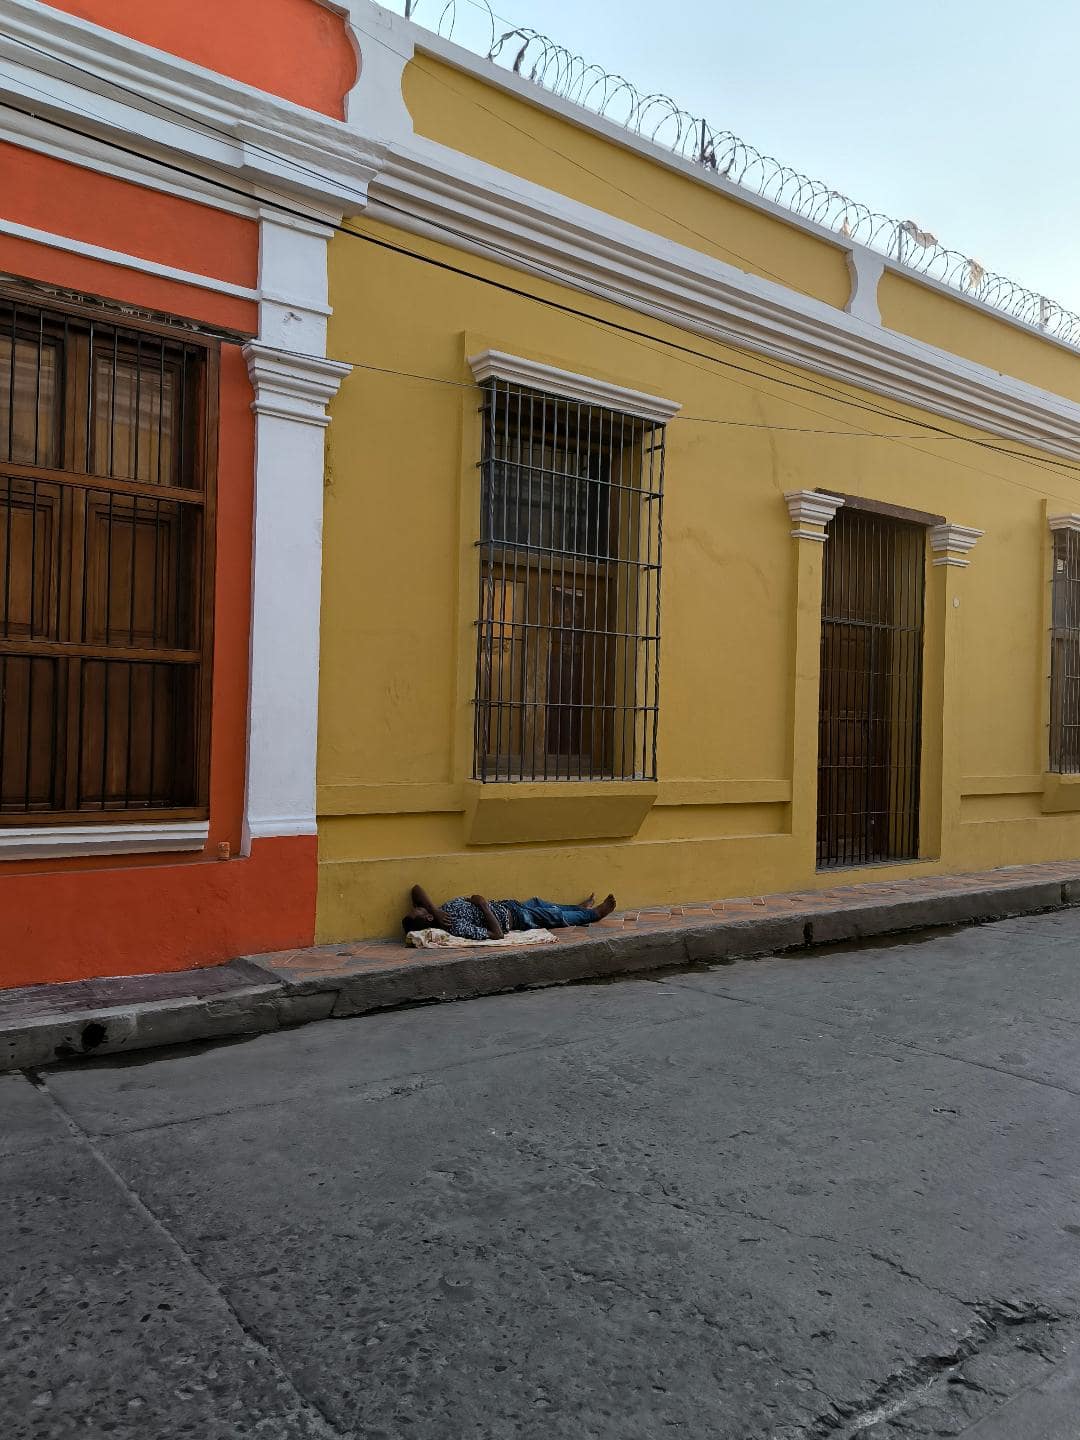 Chlap leží na chodníku a spí. Za ním je žltý a oranžový dom.